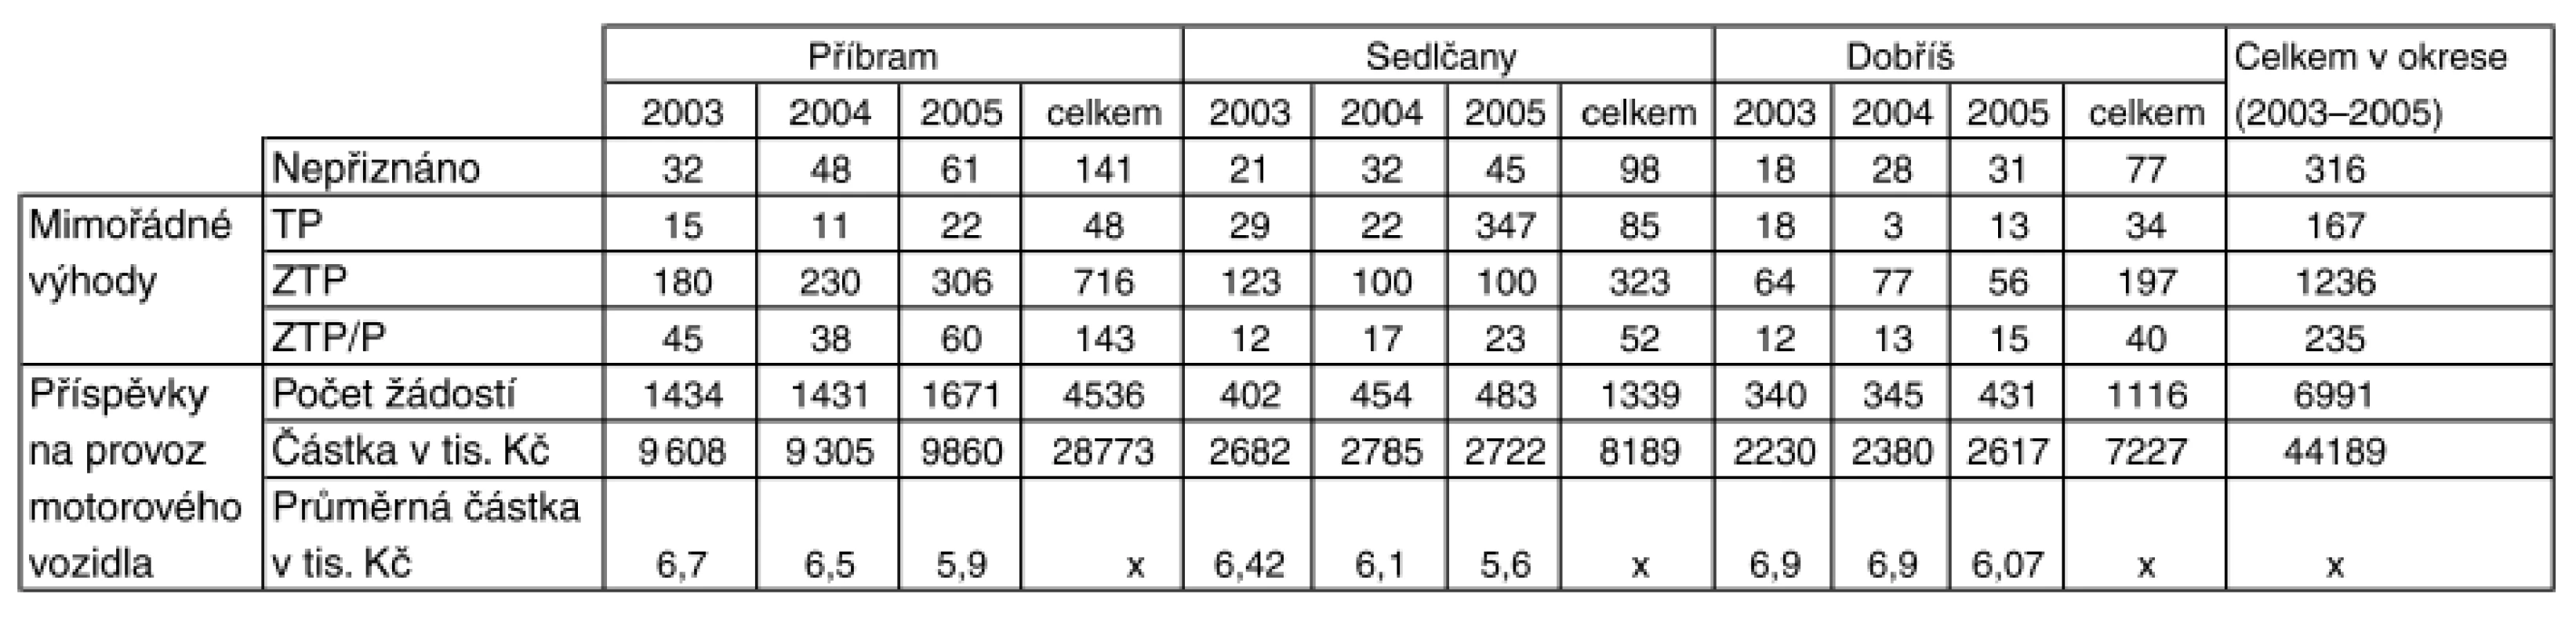 Počet žádostí a nepříznaných MV s příspěvkem na provoz motorového vozidla v letech 2003–2005 v okrese Příbram